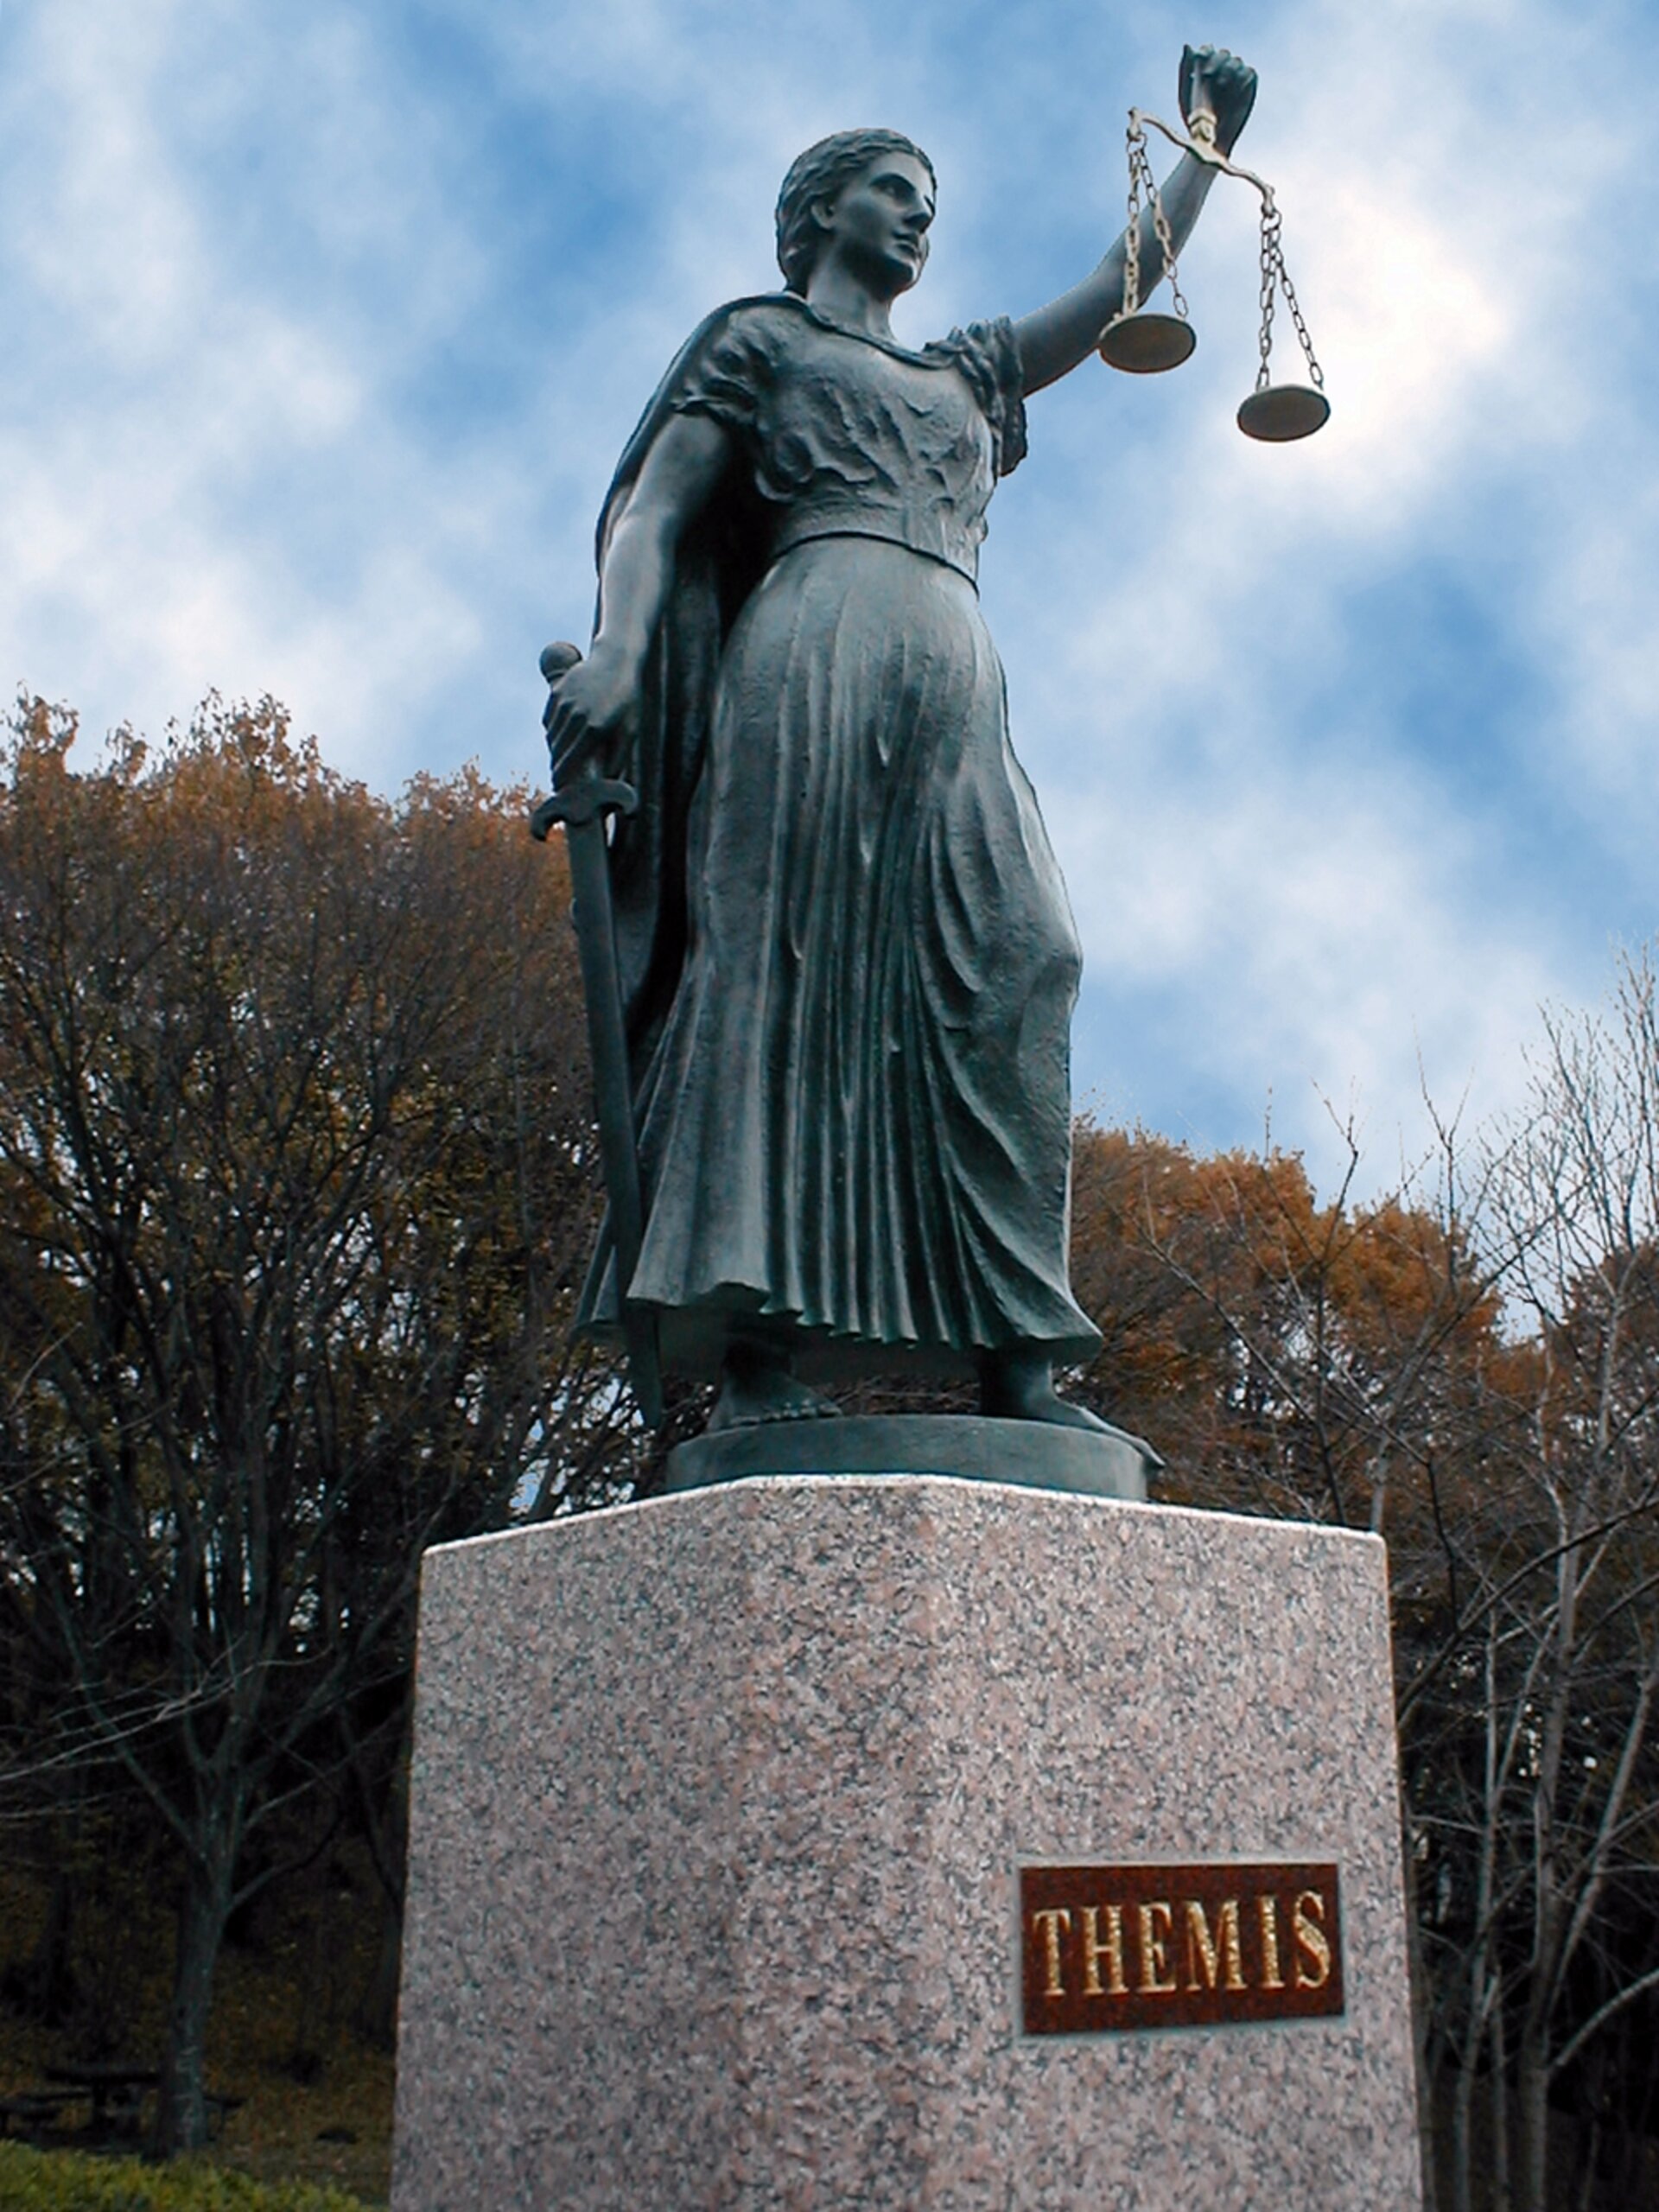 La justice. Темис Фемида. Темис статуя. Скульптура Фемиды. Памятник правосудия.